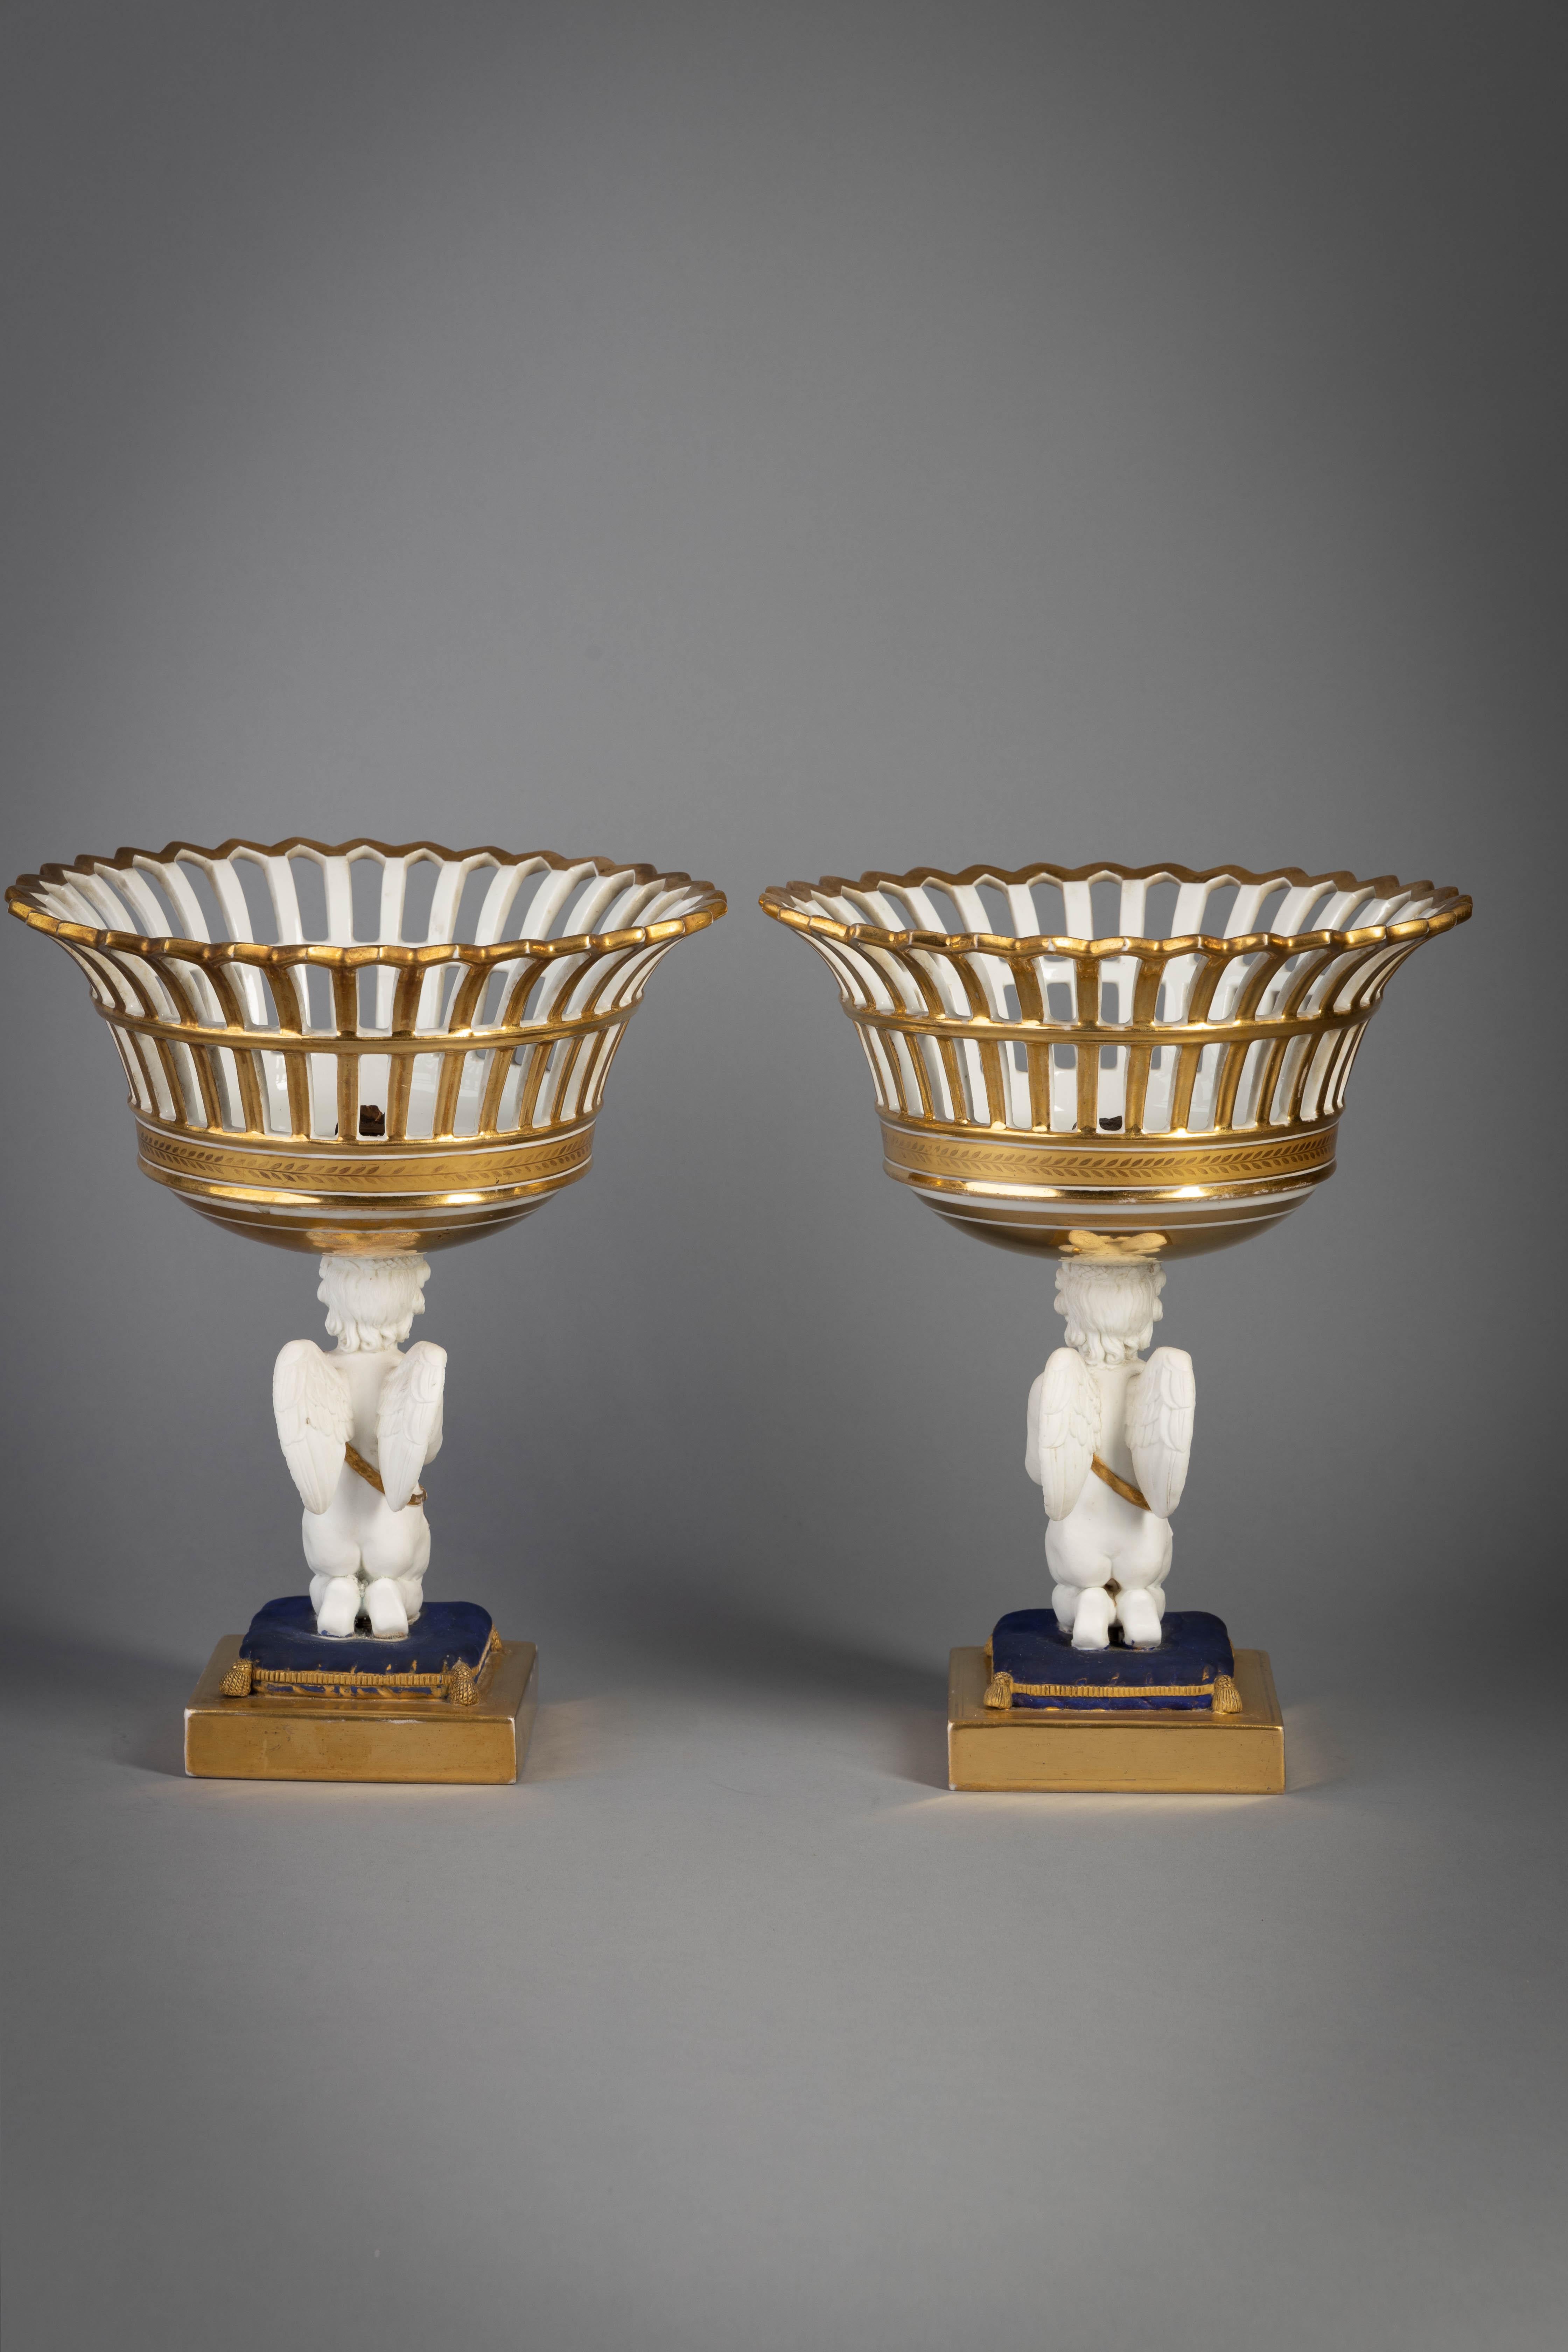 Pair of Paris porcelain figural baskets, circa 1840.